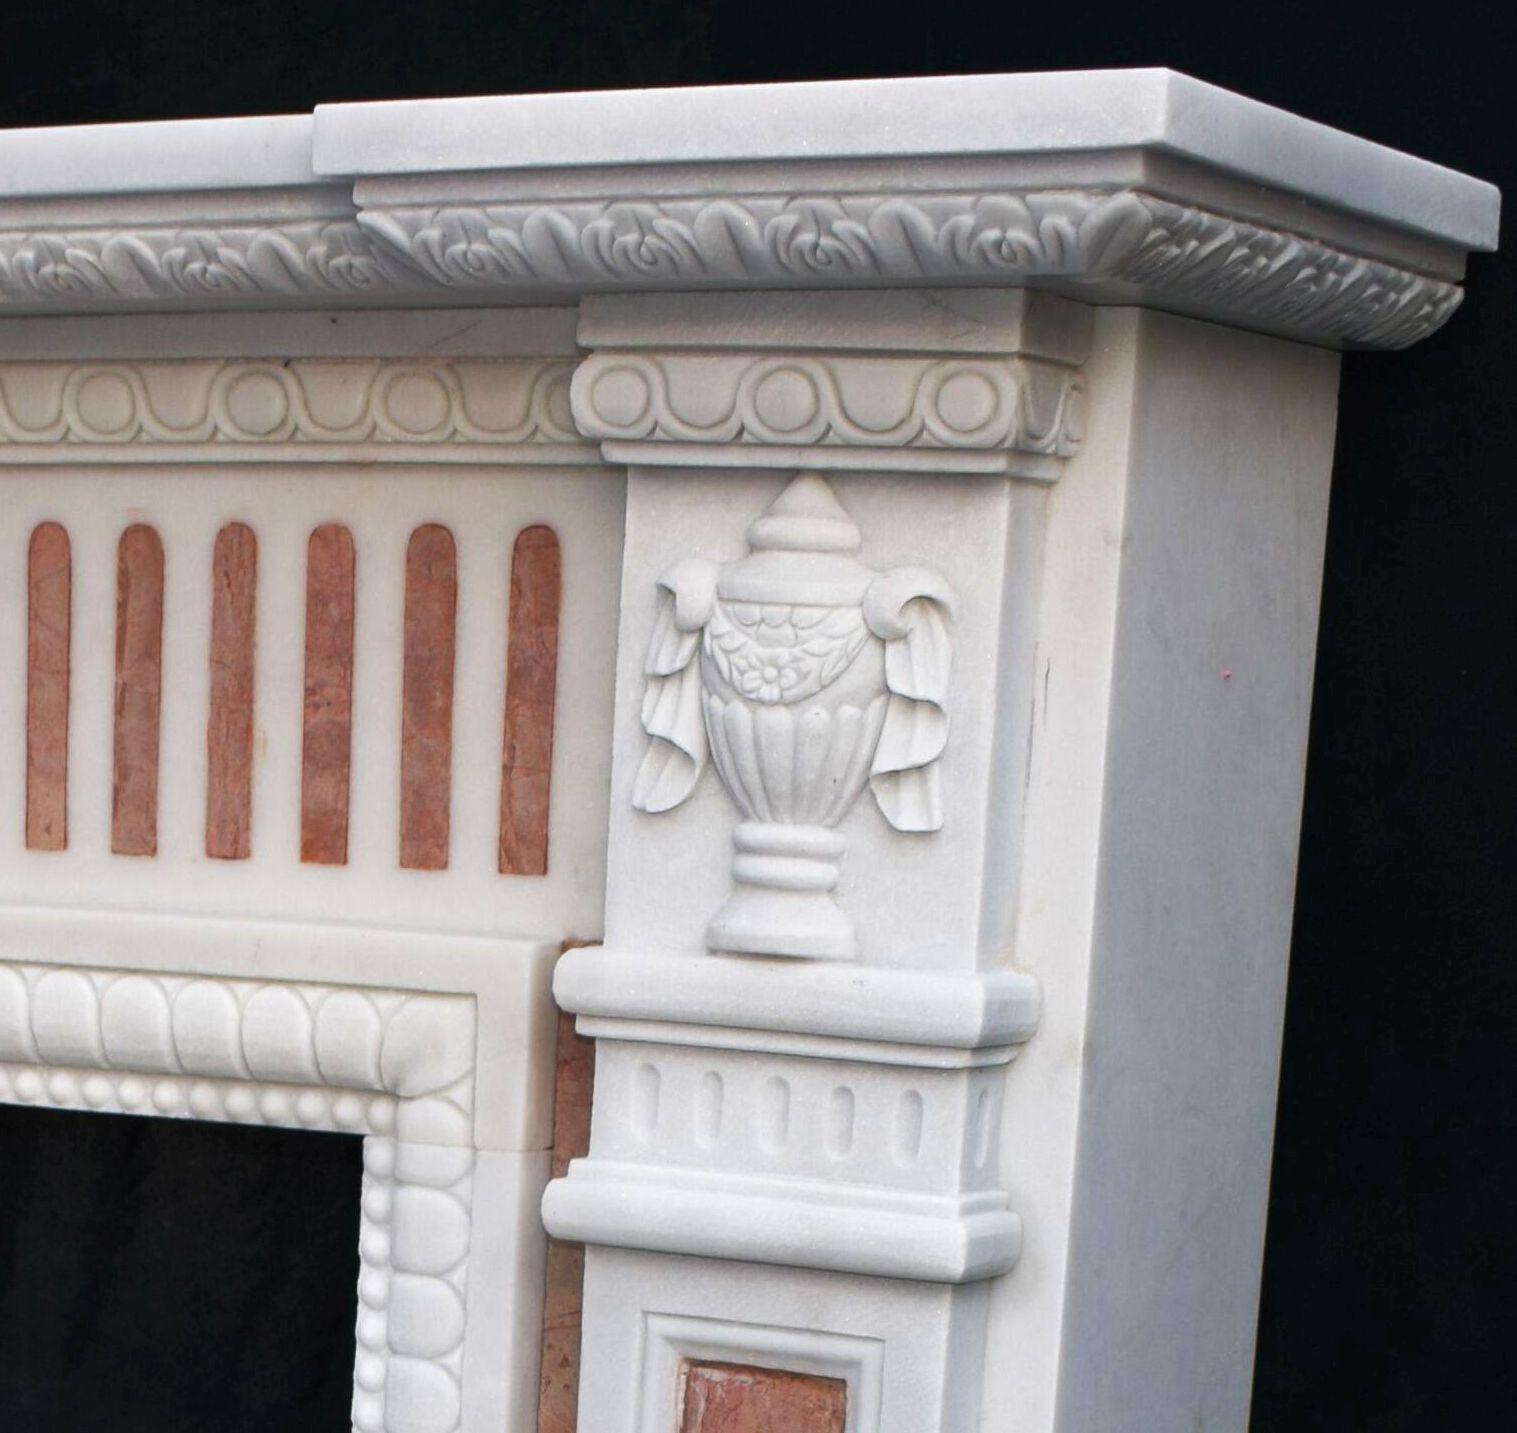 Une cheminée de qualité avec encadrement en marbre 
en marbre blanc sculpté avec des inserts en marbre rouge, la pièce étant taillée avec précision et très détaillée avec une sculpture en relief cannelée, des motifs d'urnes et des têtes de